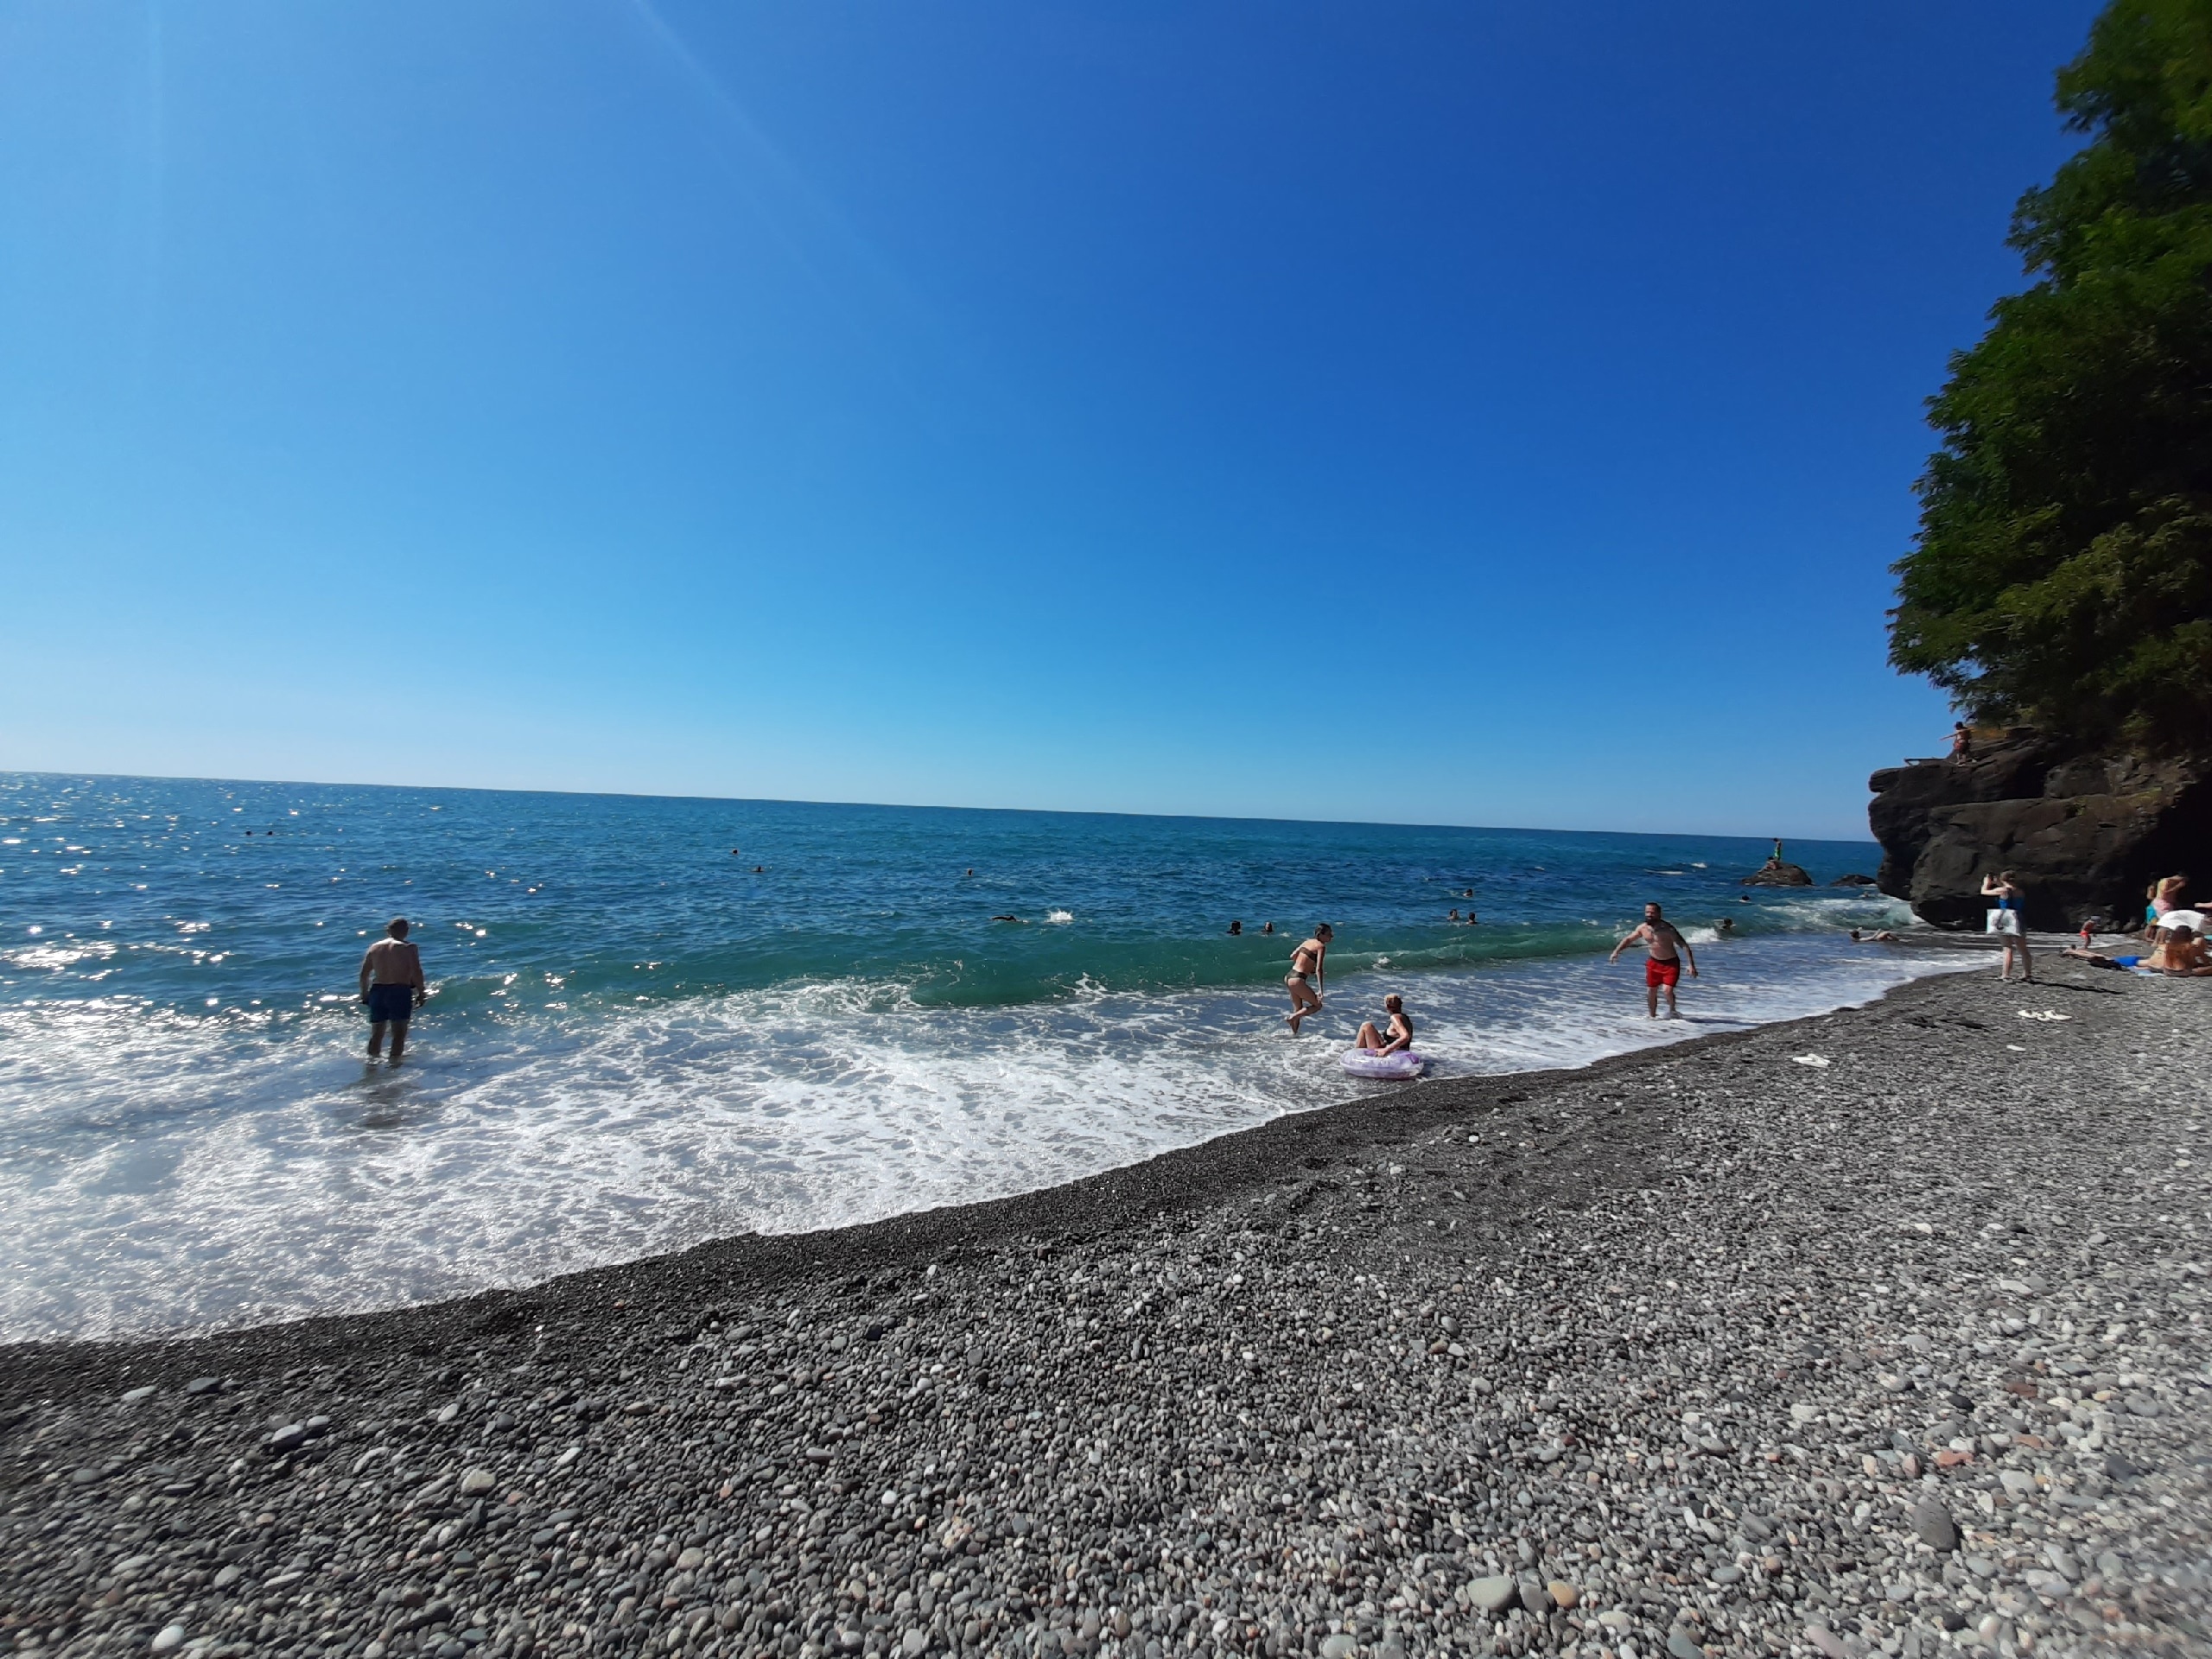 "Не спасает ничего": туристы на курортах Черного моря массово жалуются на новую напасть